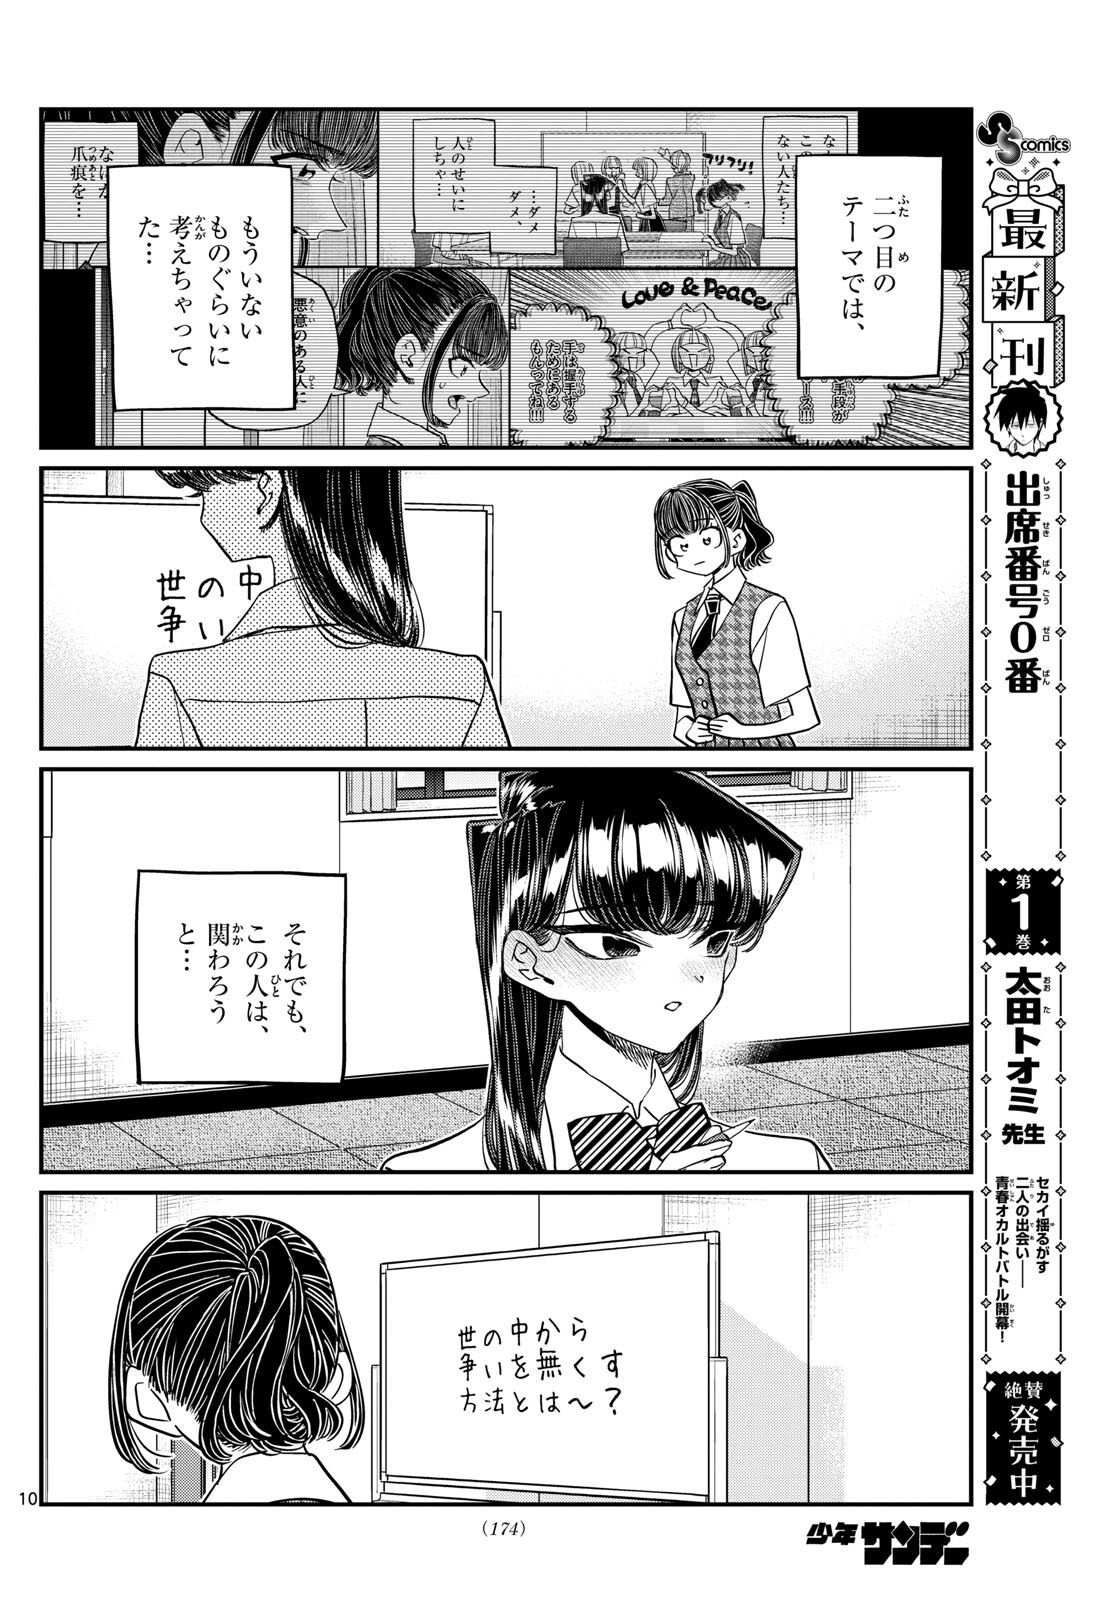 Komi-san wa Komyushou Desu - Chapter 441 - Page 10